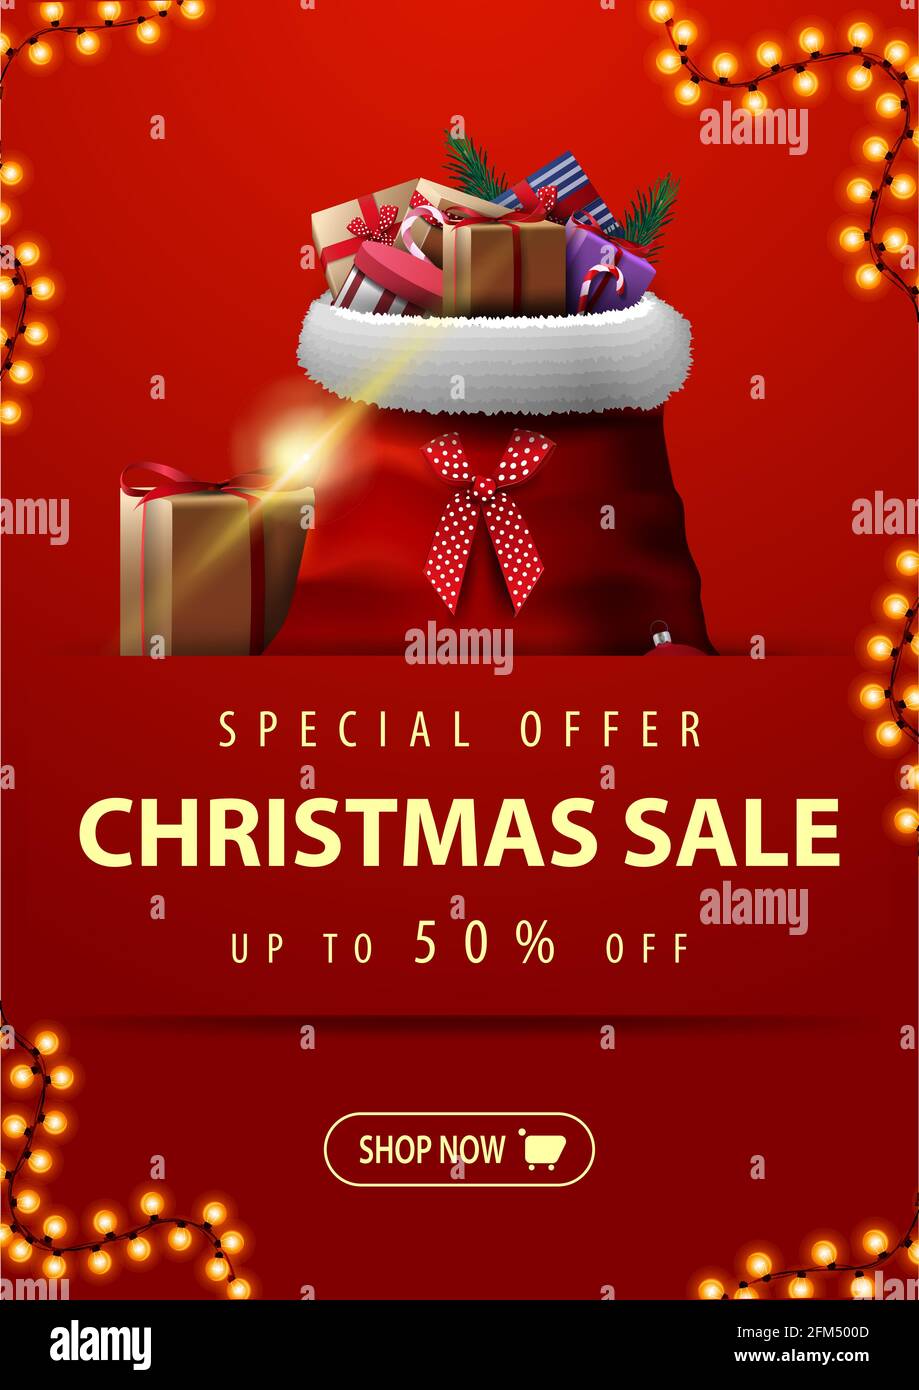 Offre spéciale, solde de Noël, jusqu'à 50 rabais, bannière de réduction verticale rouge avec guirlande, bouton et sac du Père Noël avec cadeaux Banque D'Images